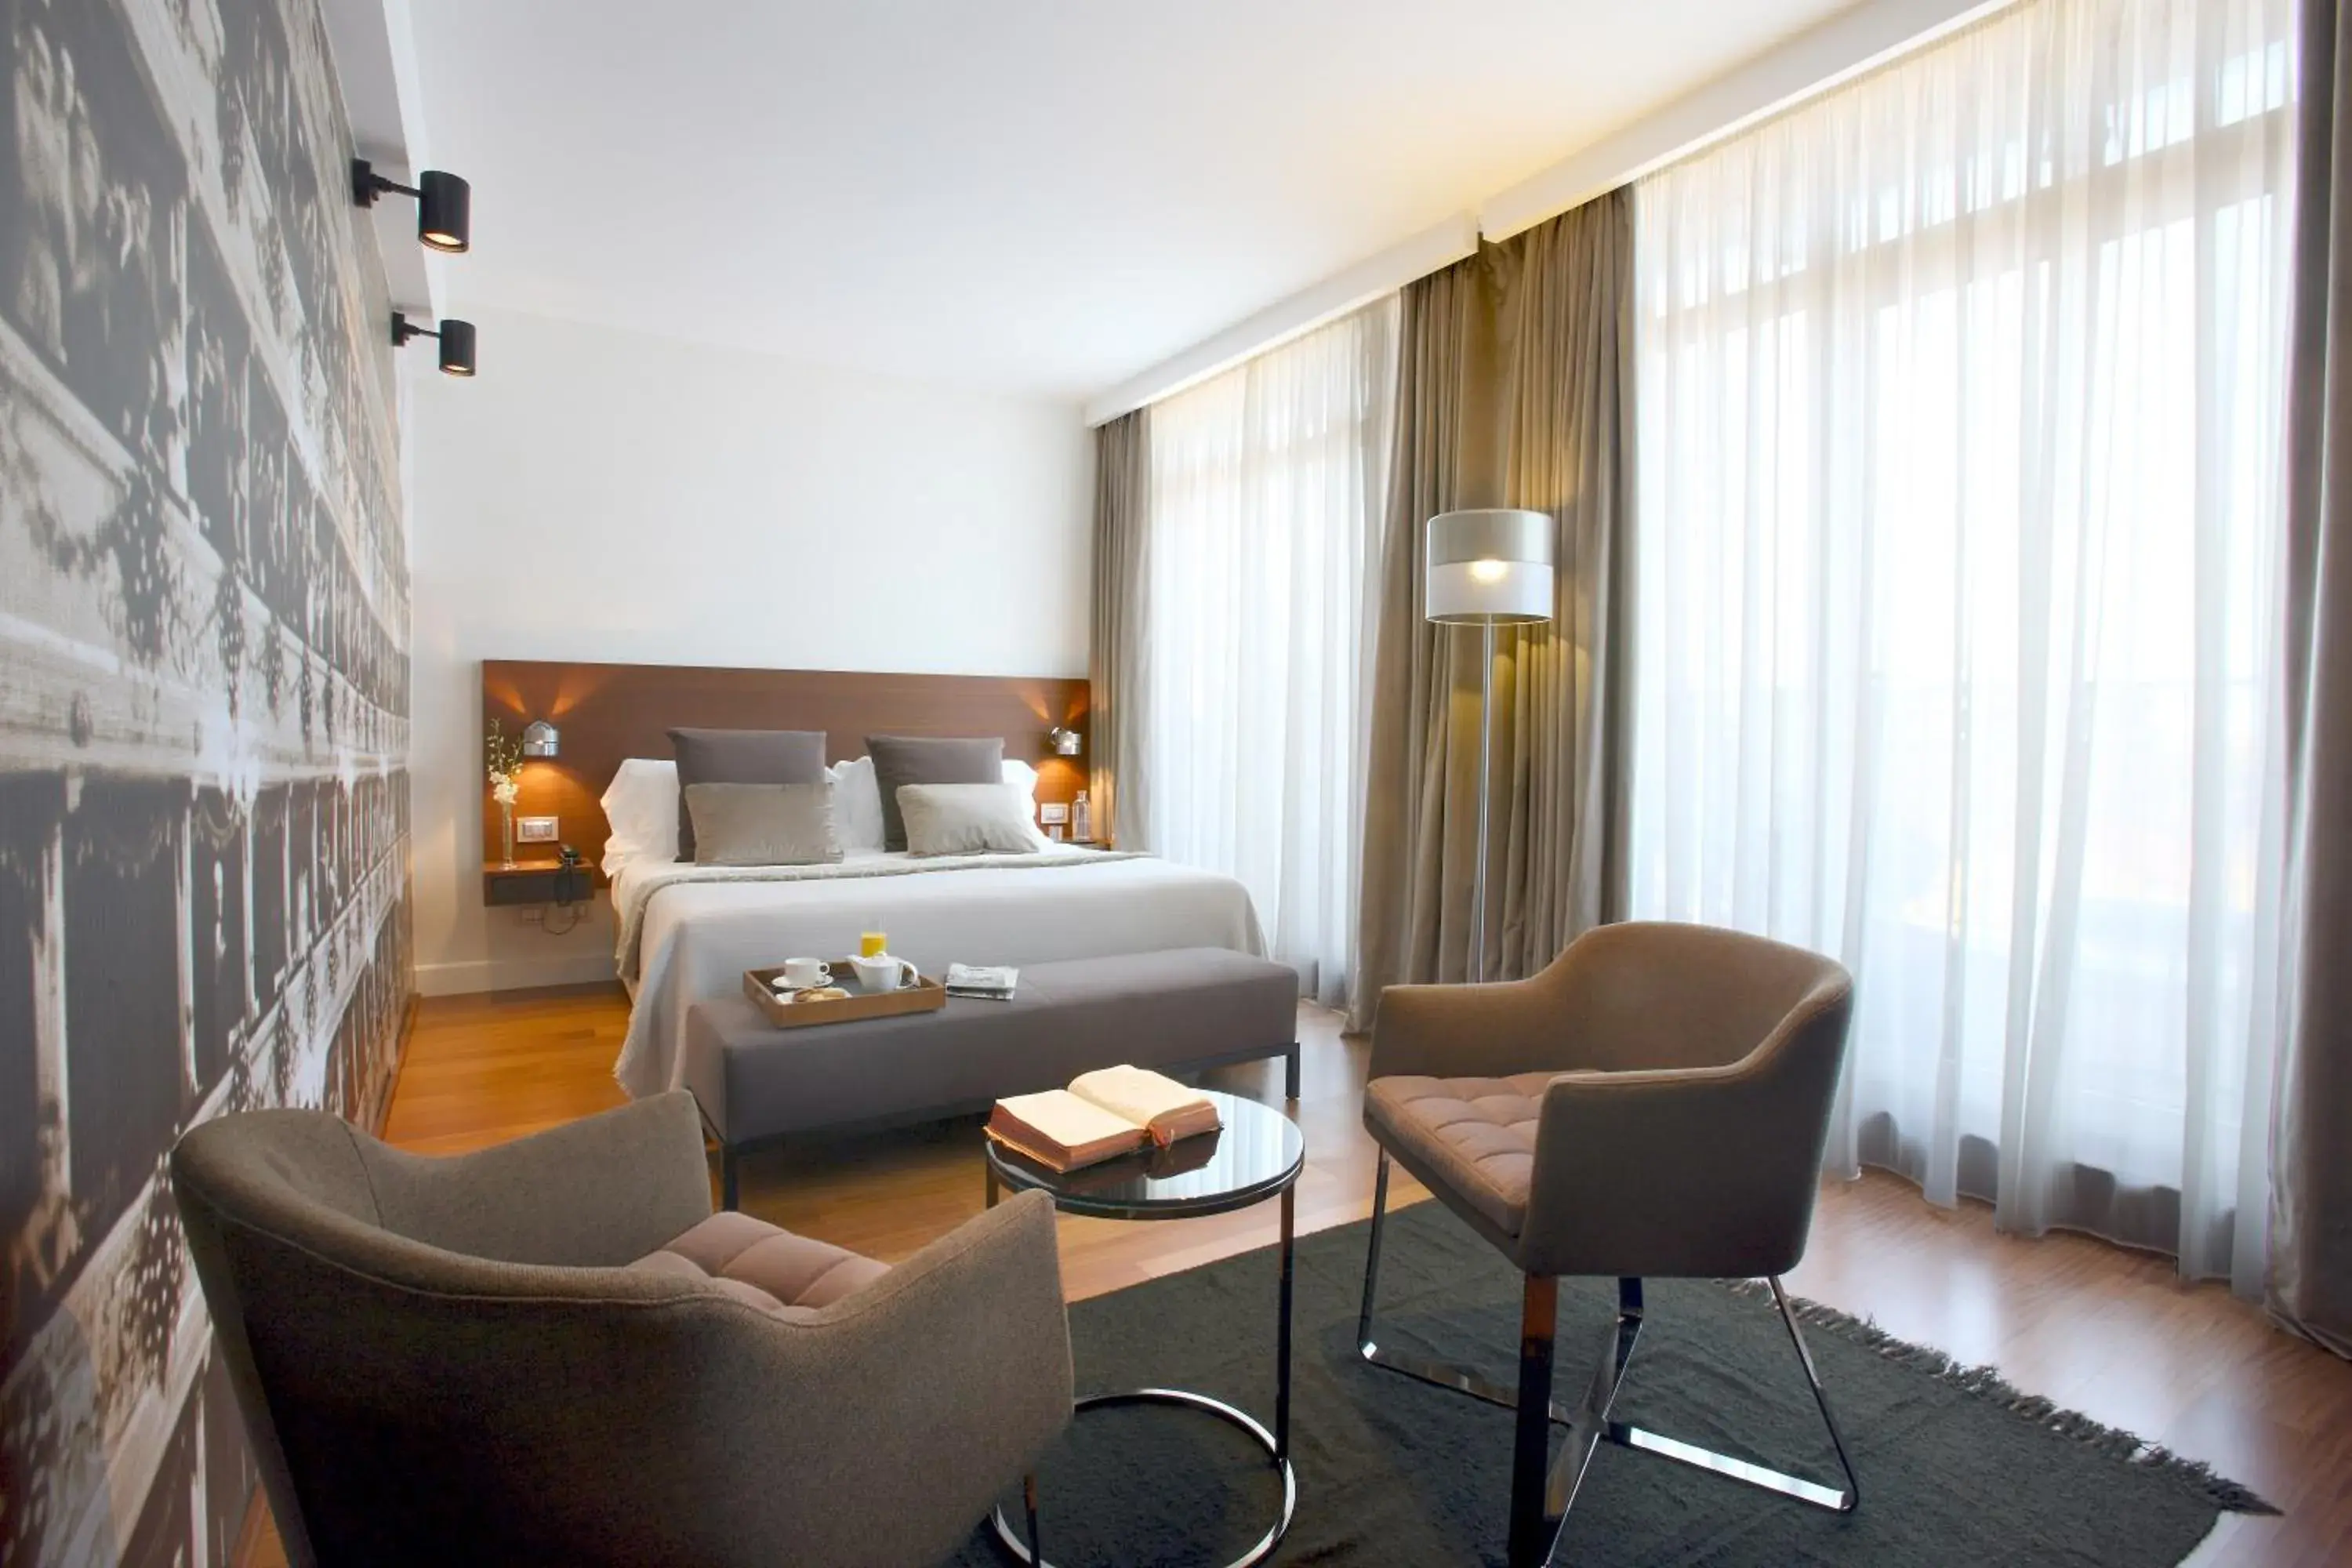 Bedroom in Hotel Milano Scala